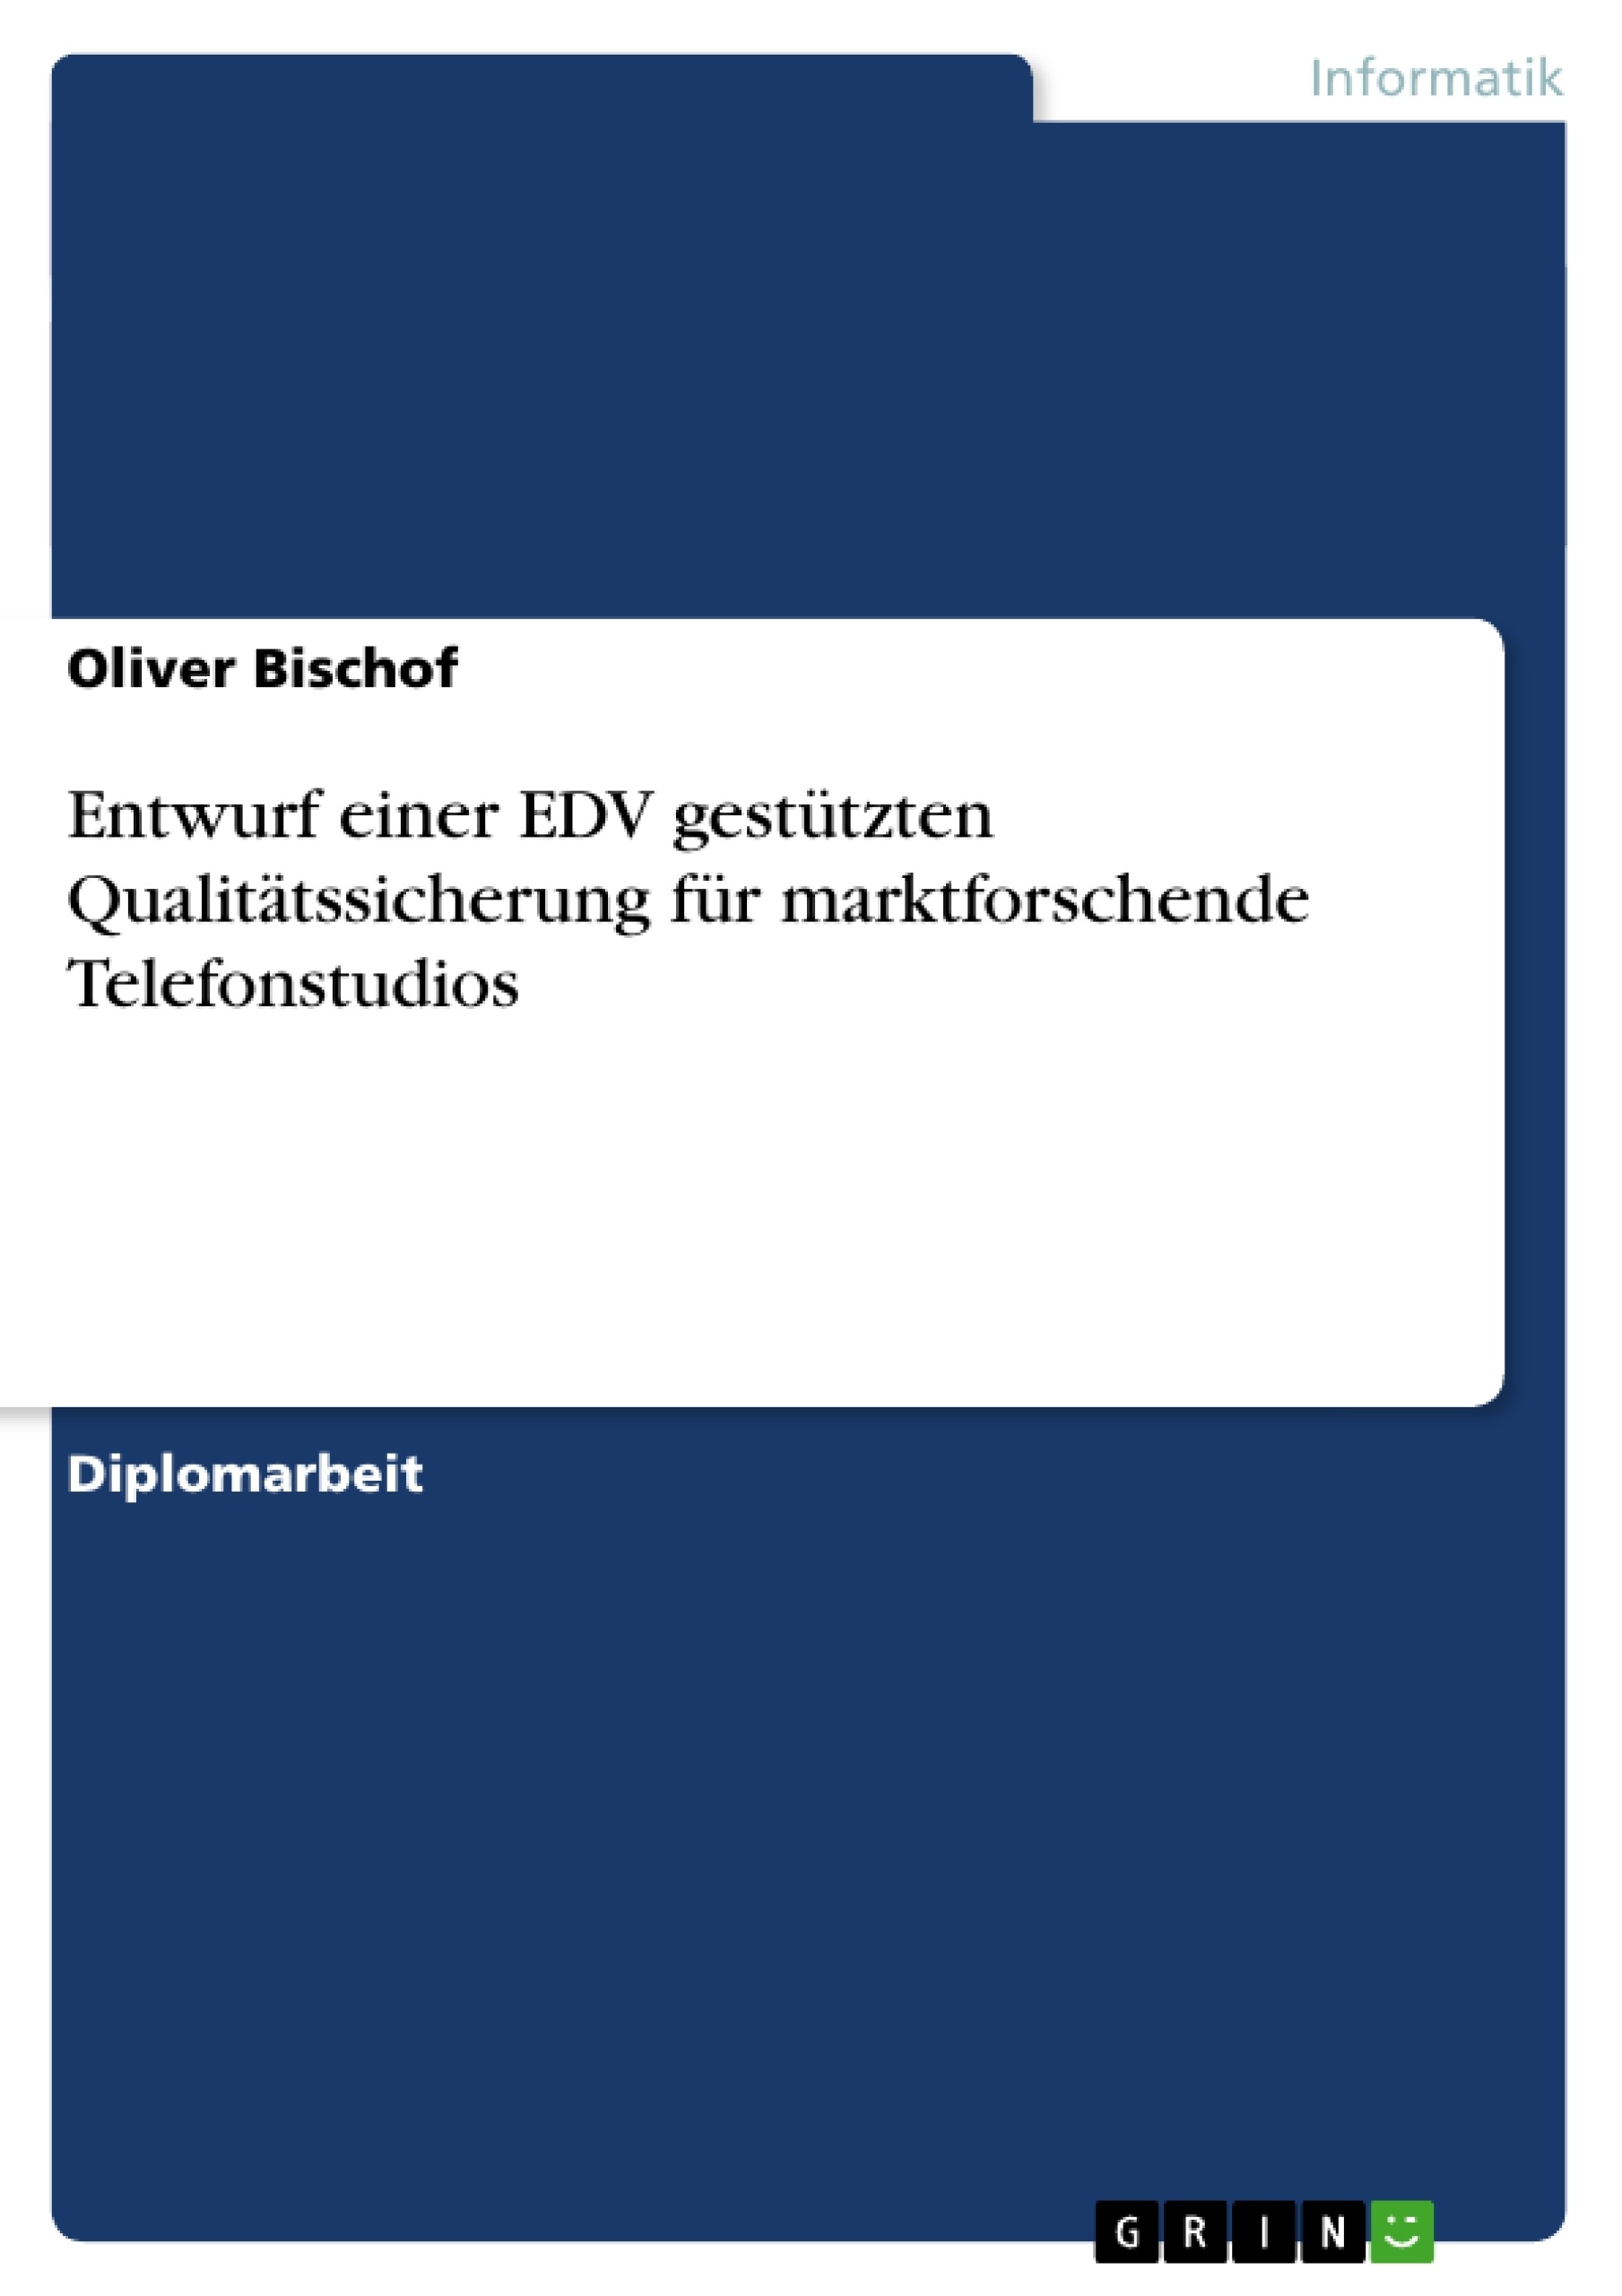 Título: Entwurf einer EDV gestützten Qualitätssicherung für marktforschende Telefonstudios